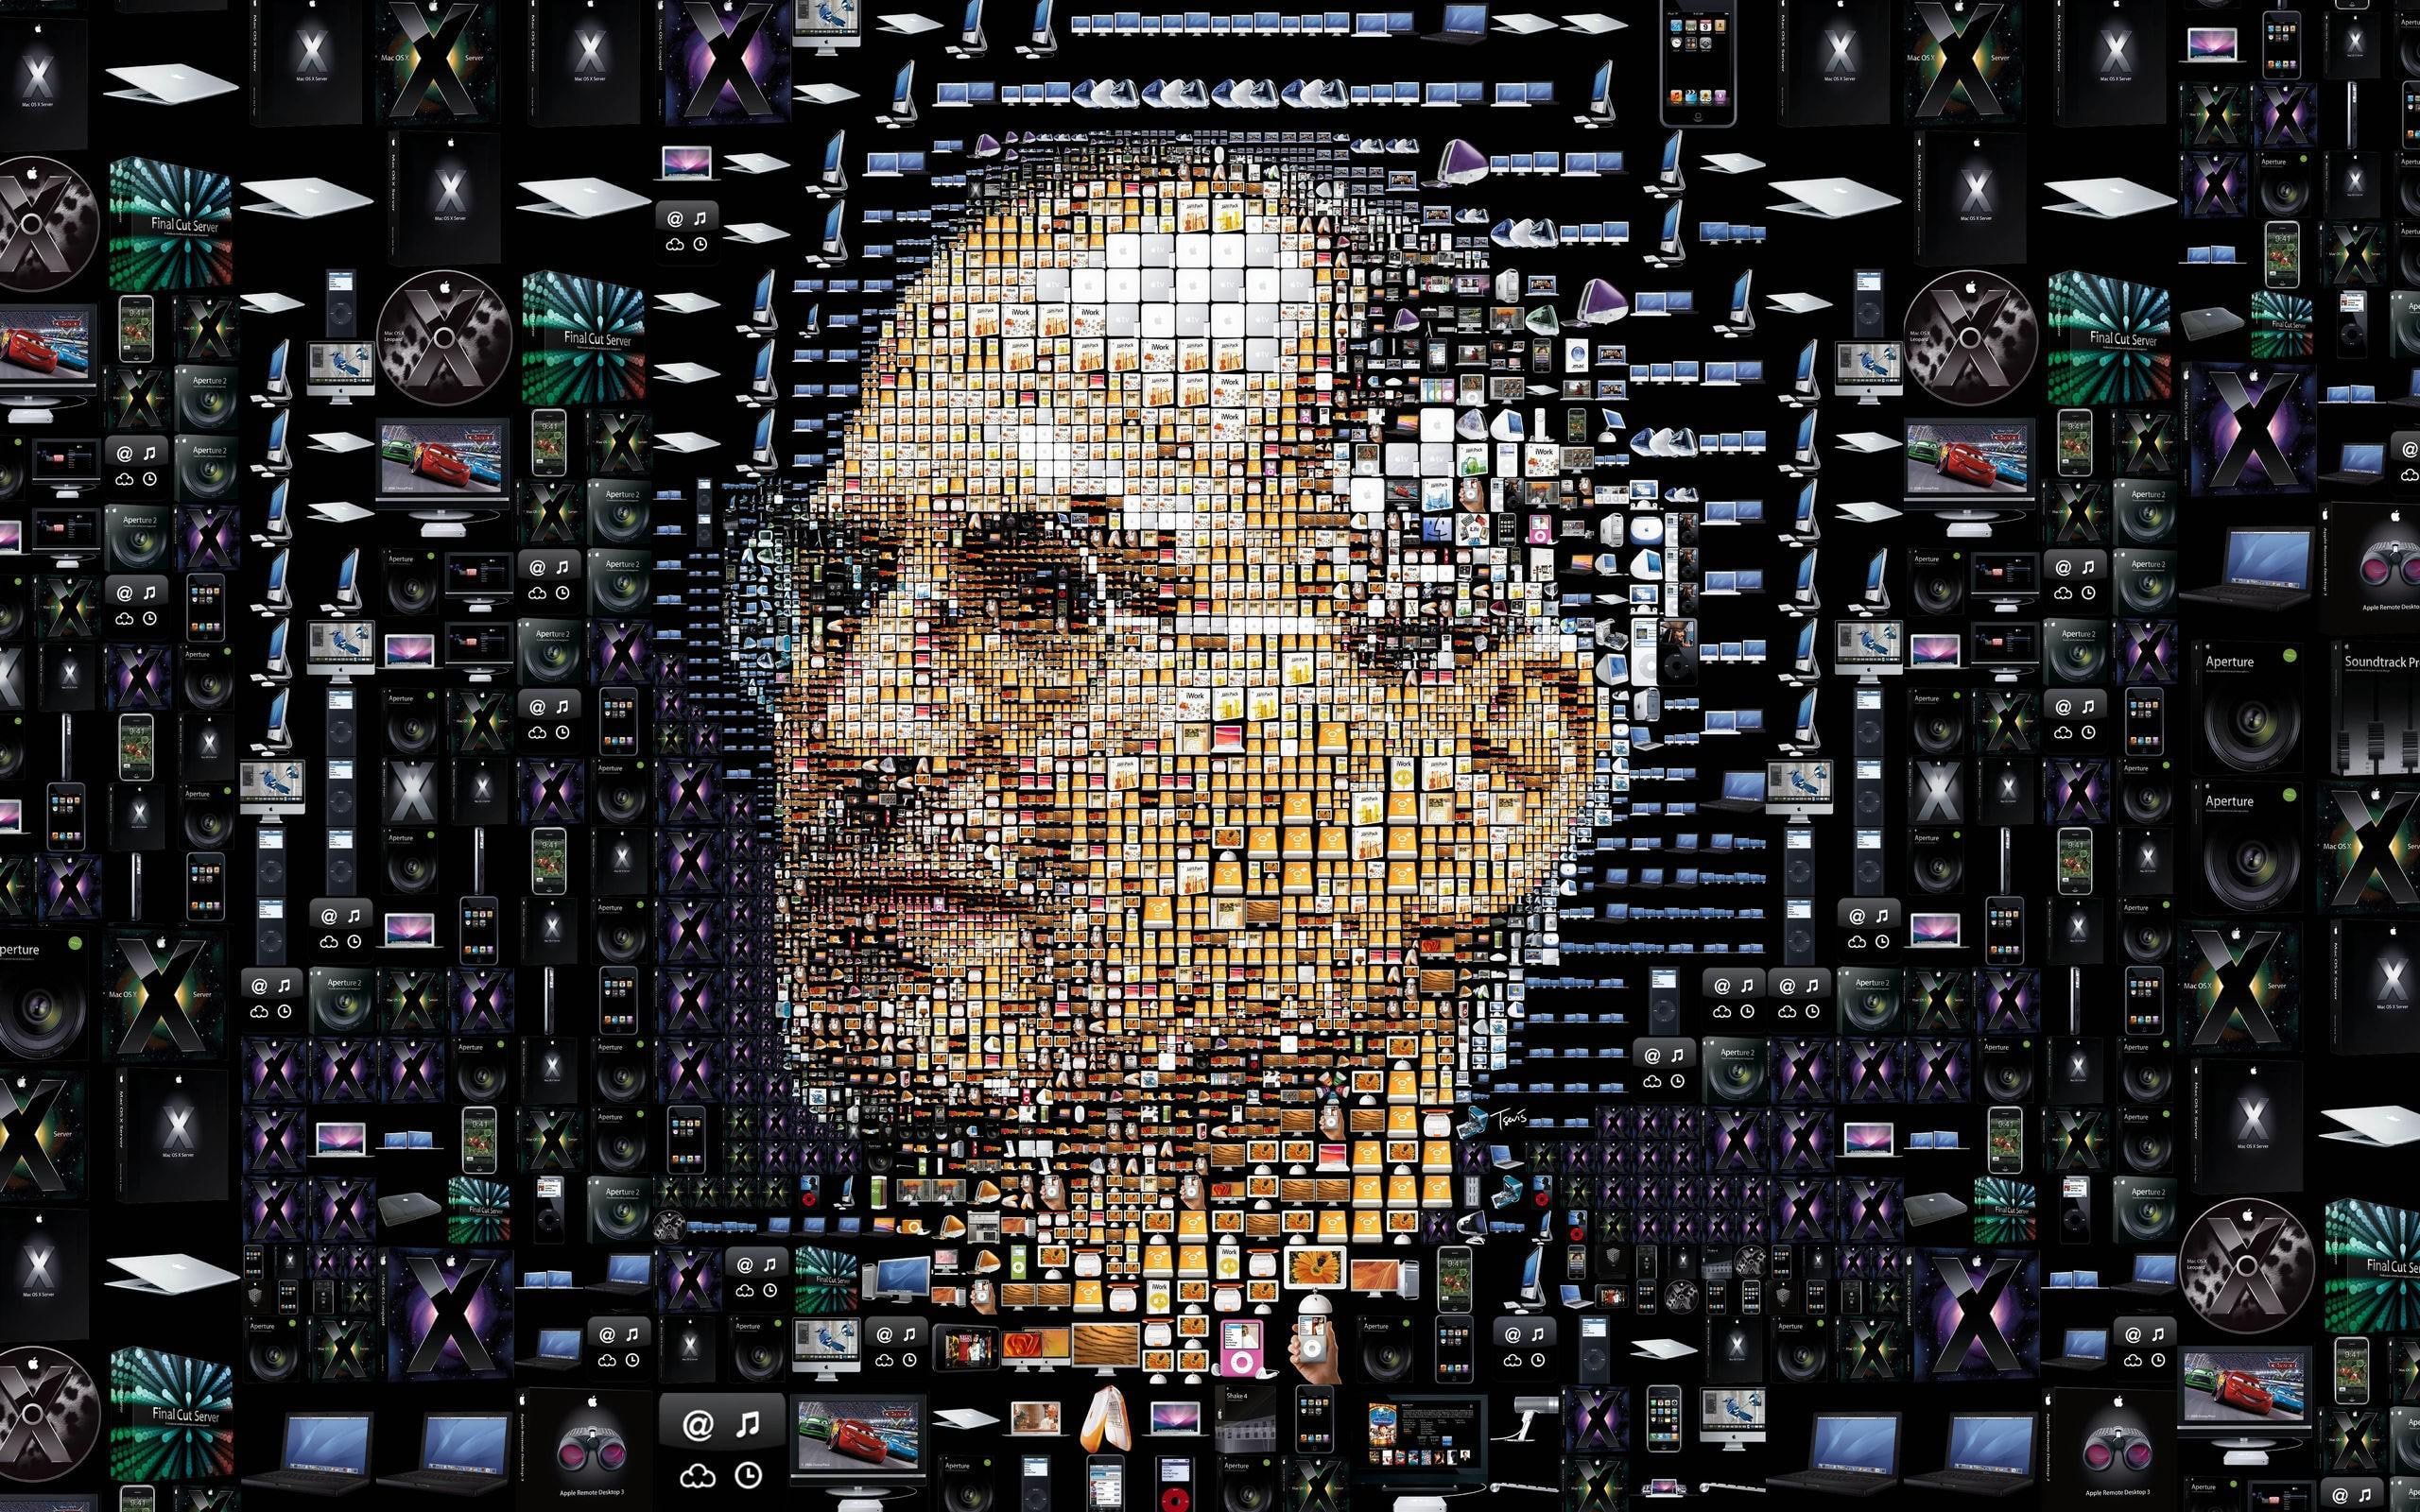 Steve Jobs Blue Face Art Wallpapers